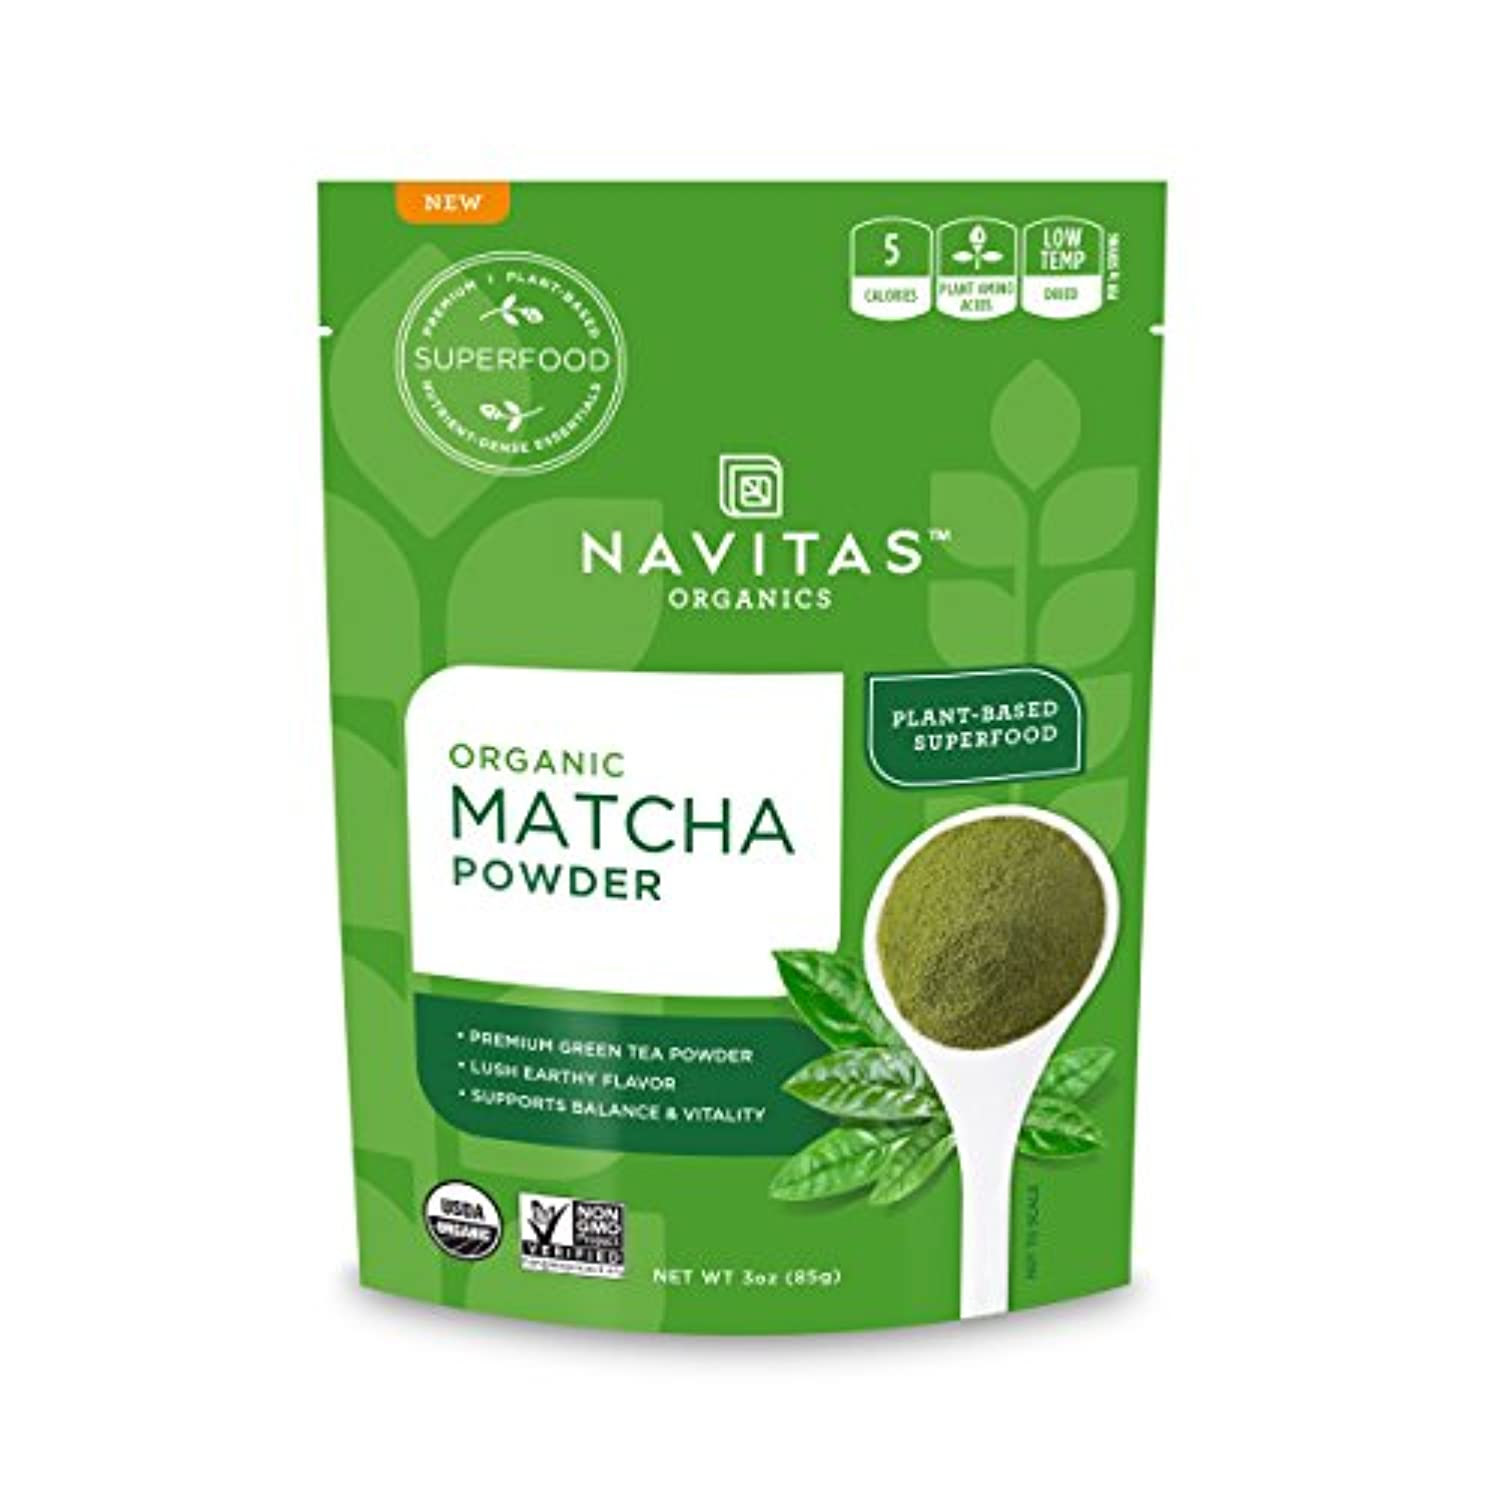 Image of Matcha Powder, 3oz. Pouch Premium Culinary Grade, Organic, Non-GMO, Gluten-Free